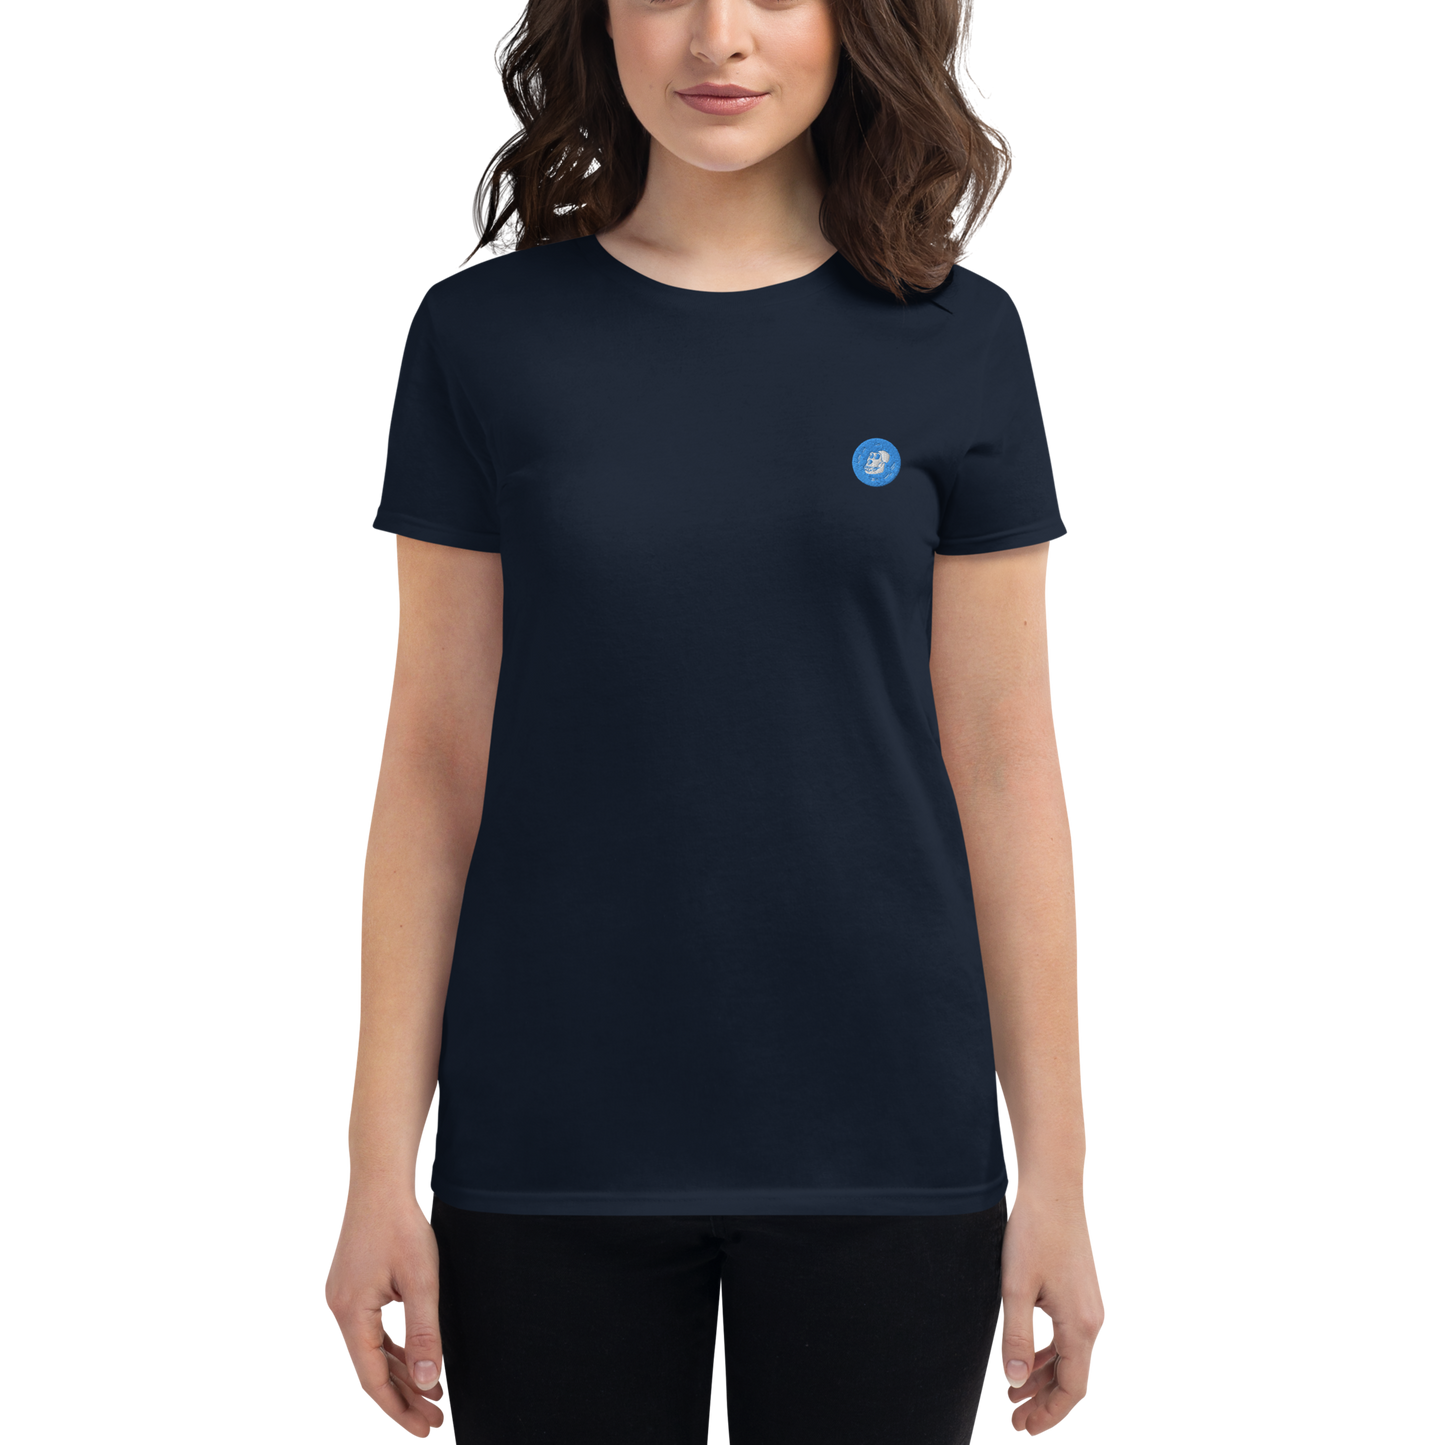 ApeCoin (APE) - Women's short sleeve t-shirt